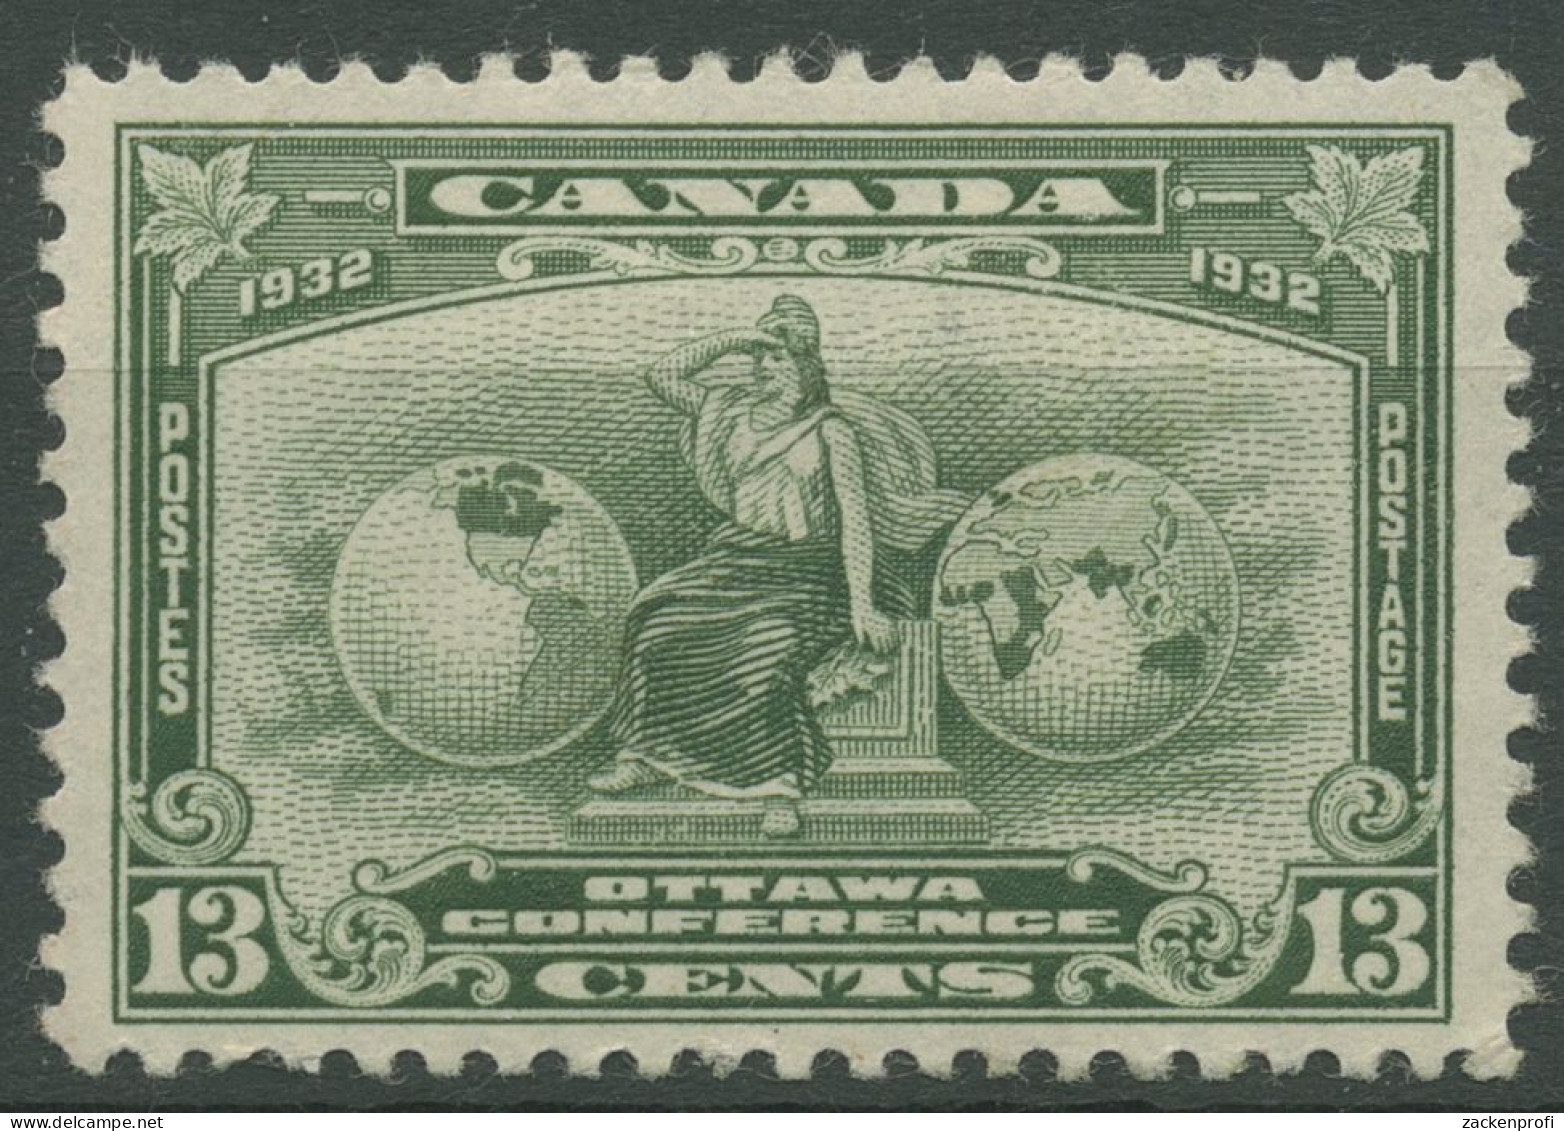 Kanada 1932 Wirtschaftskonferenz In Ottawa Allegorie 161 Mit Falz, Haftstellen - Neufs